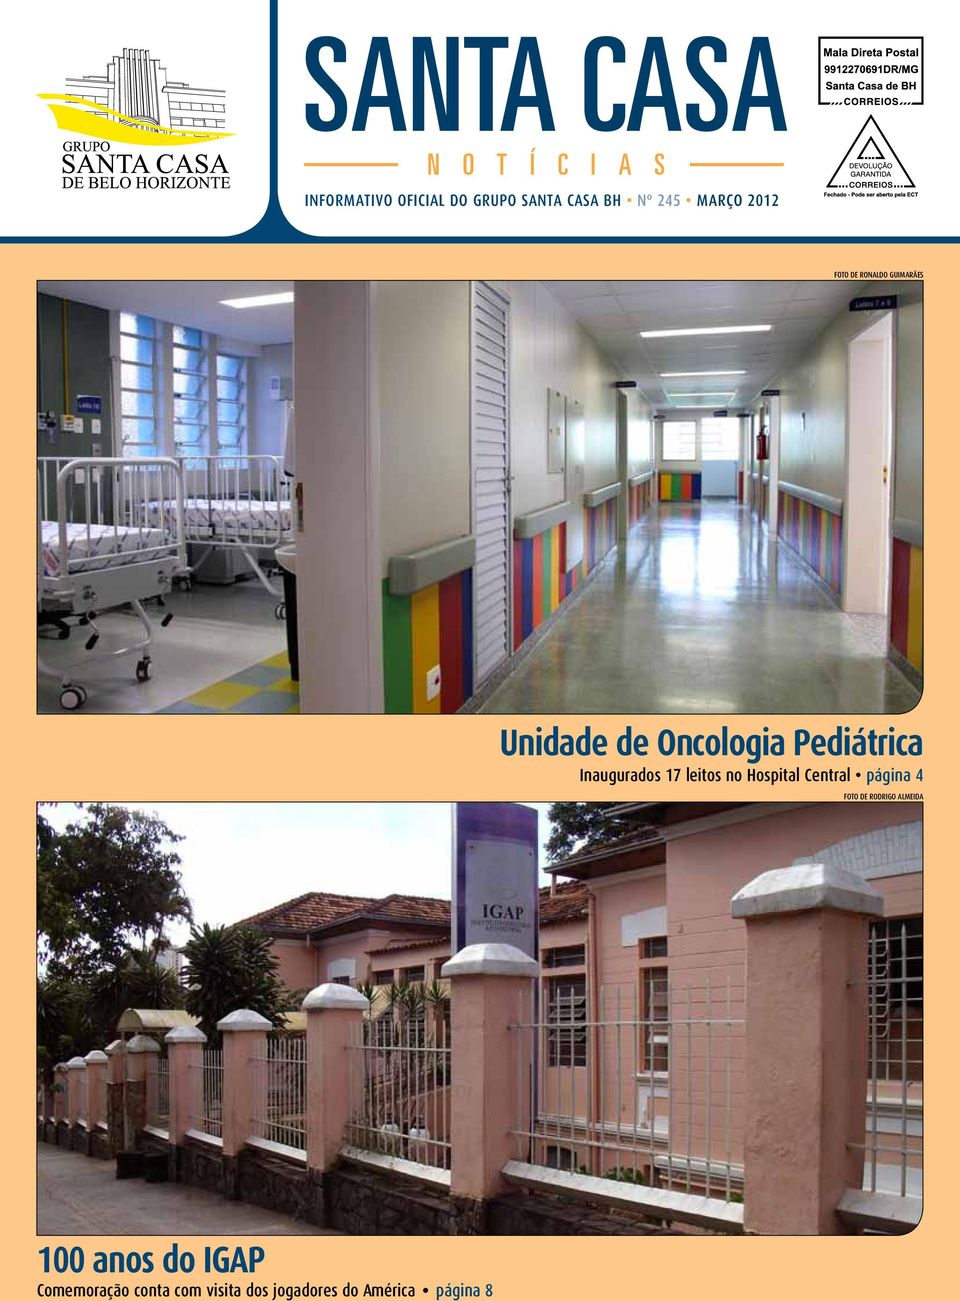 Inaugurados 17 leitos no Hospital Central página 4 Foto de Rodrigo Almeida